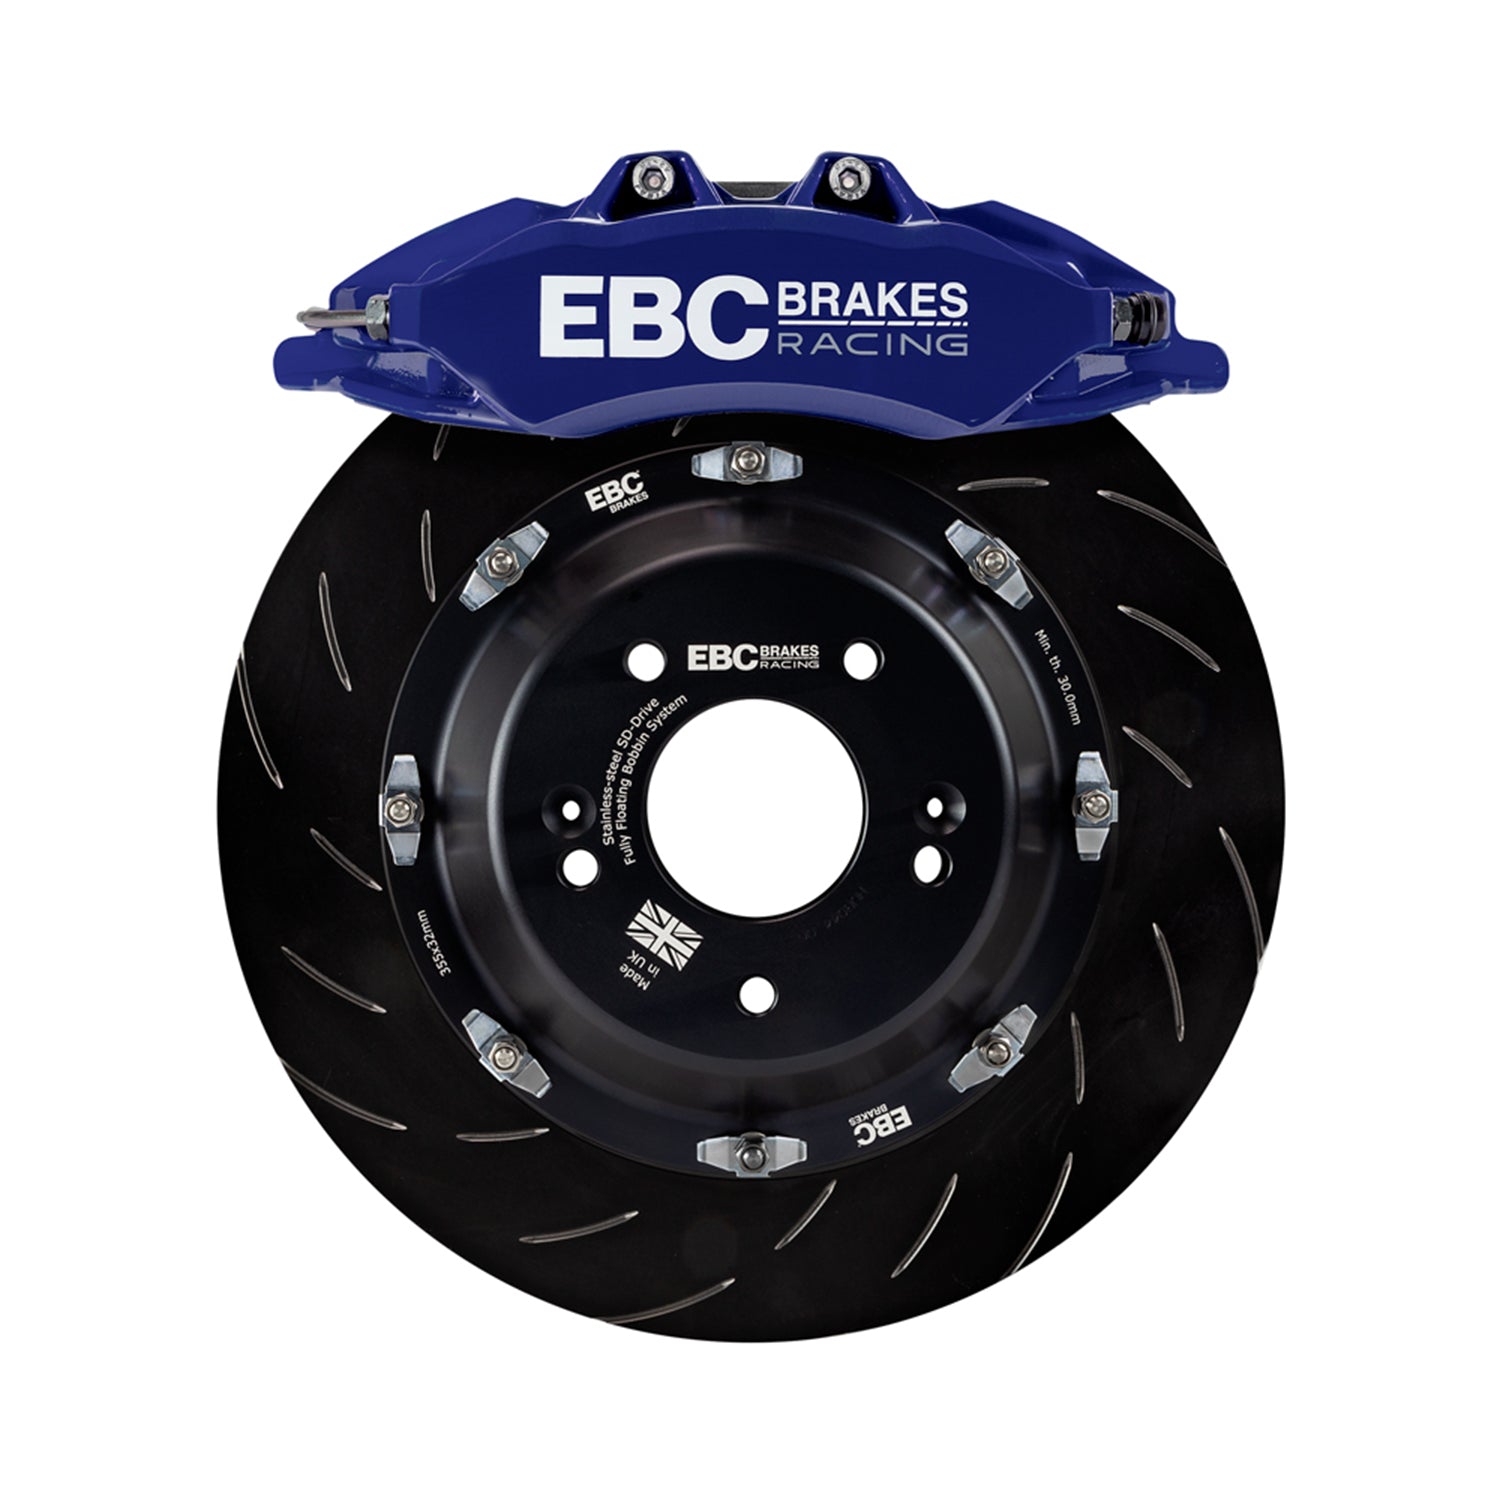 EBC Racing Big Brake Kit For BMW F80 M3, F82 M4 & F87 M2 In Blue